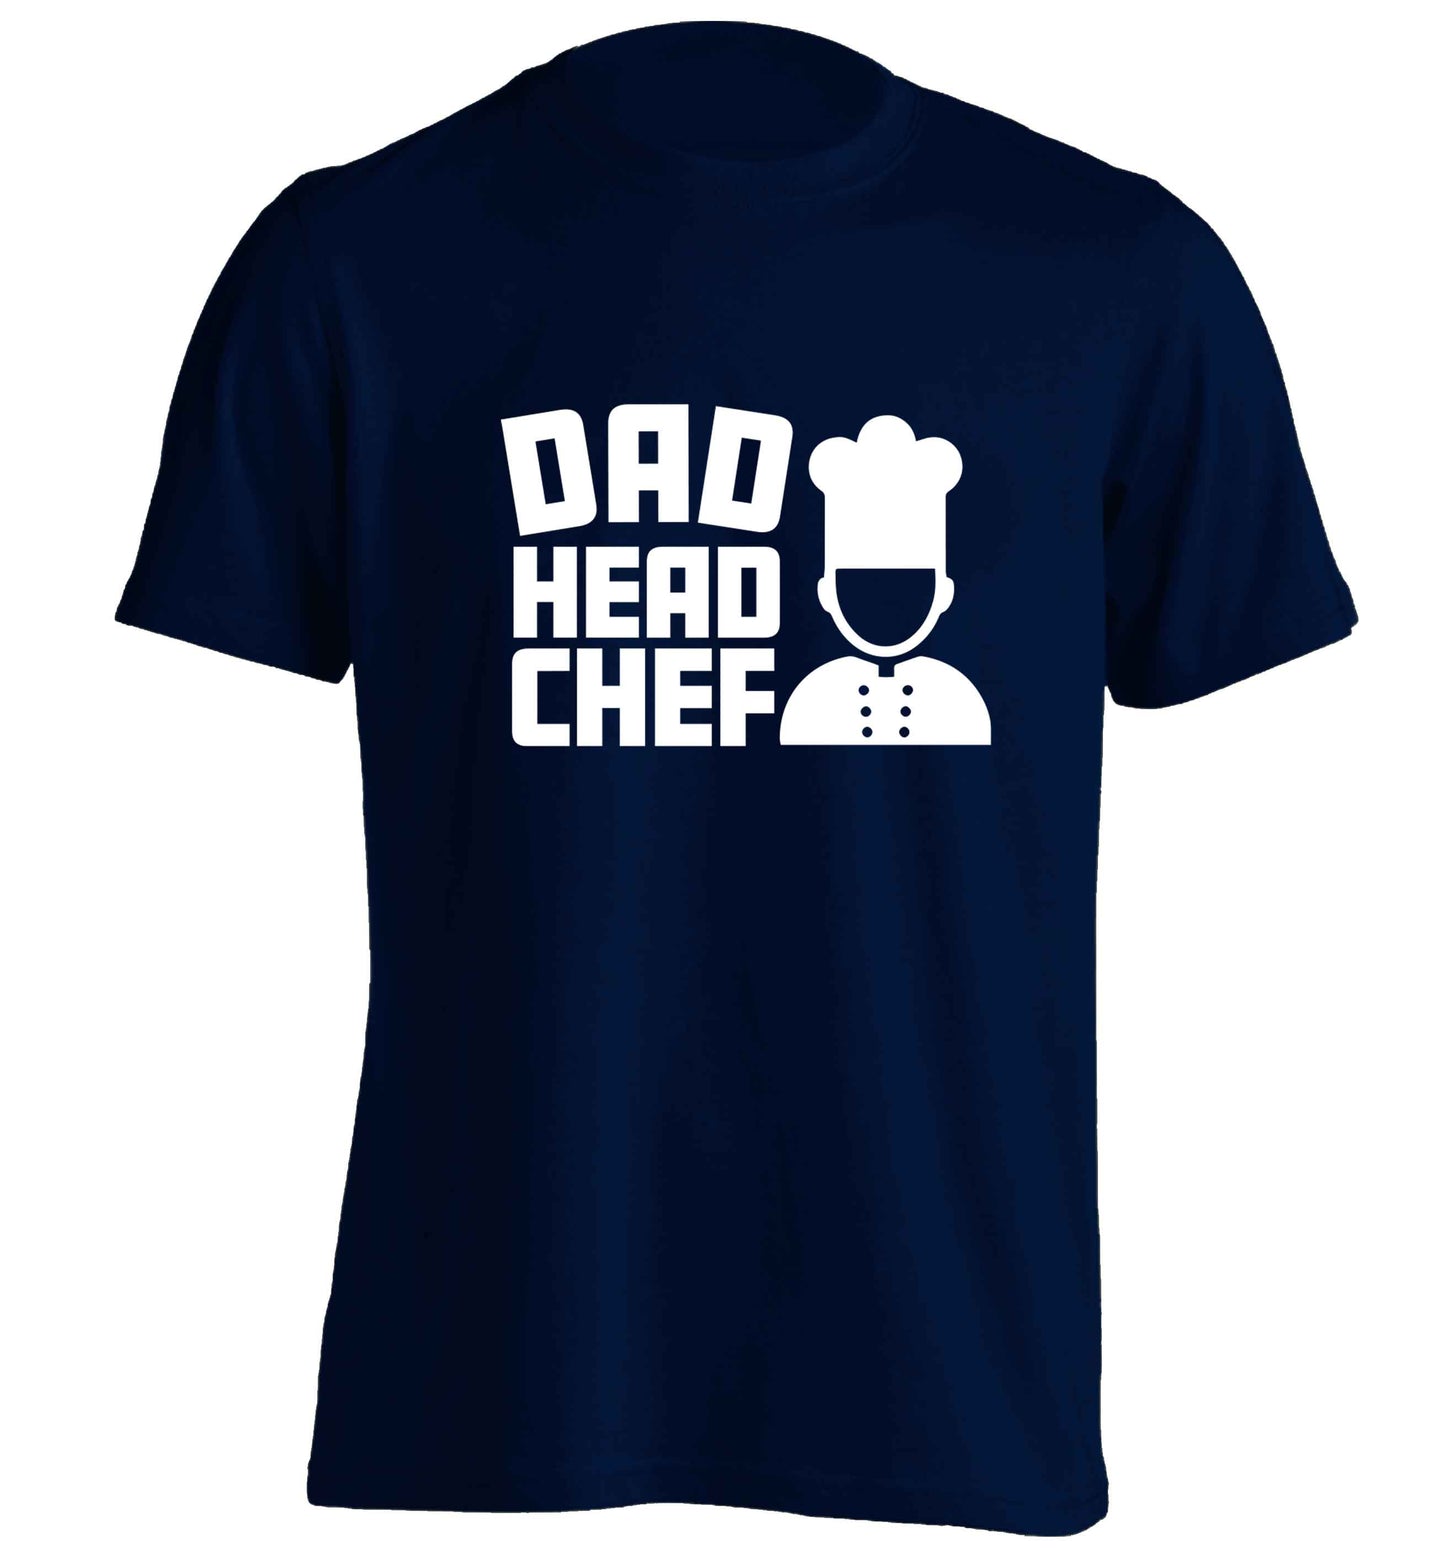 Dad head chef adults unisex navy Tshirt 2XL